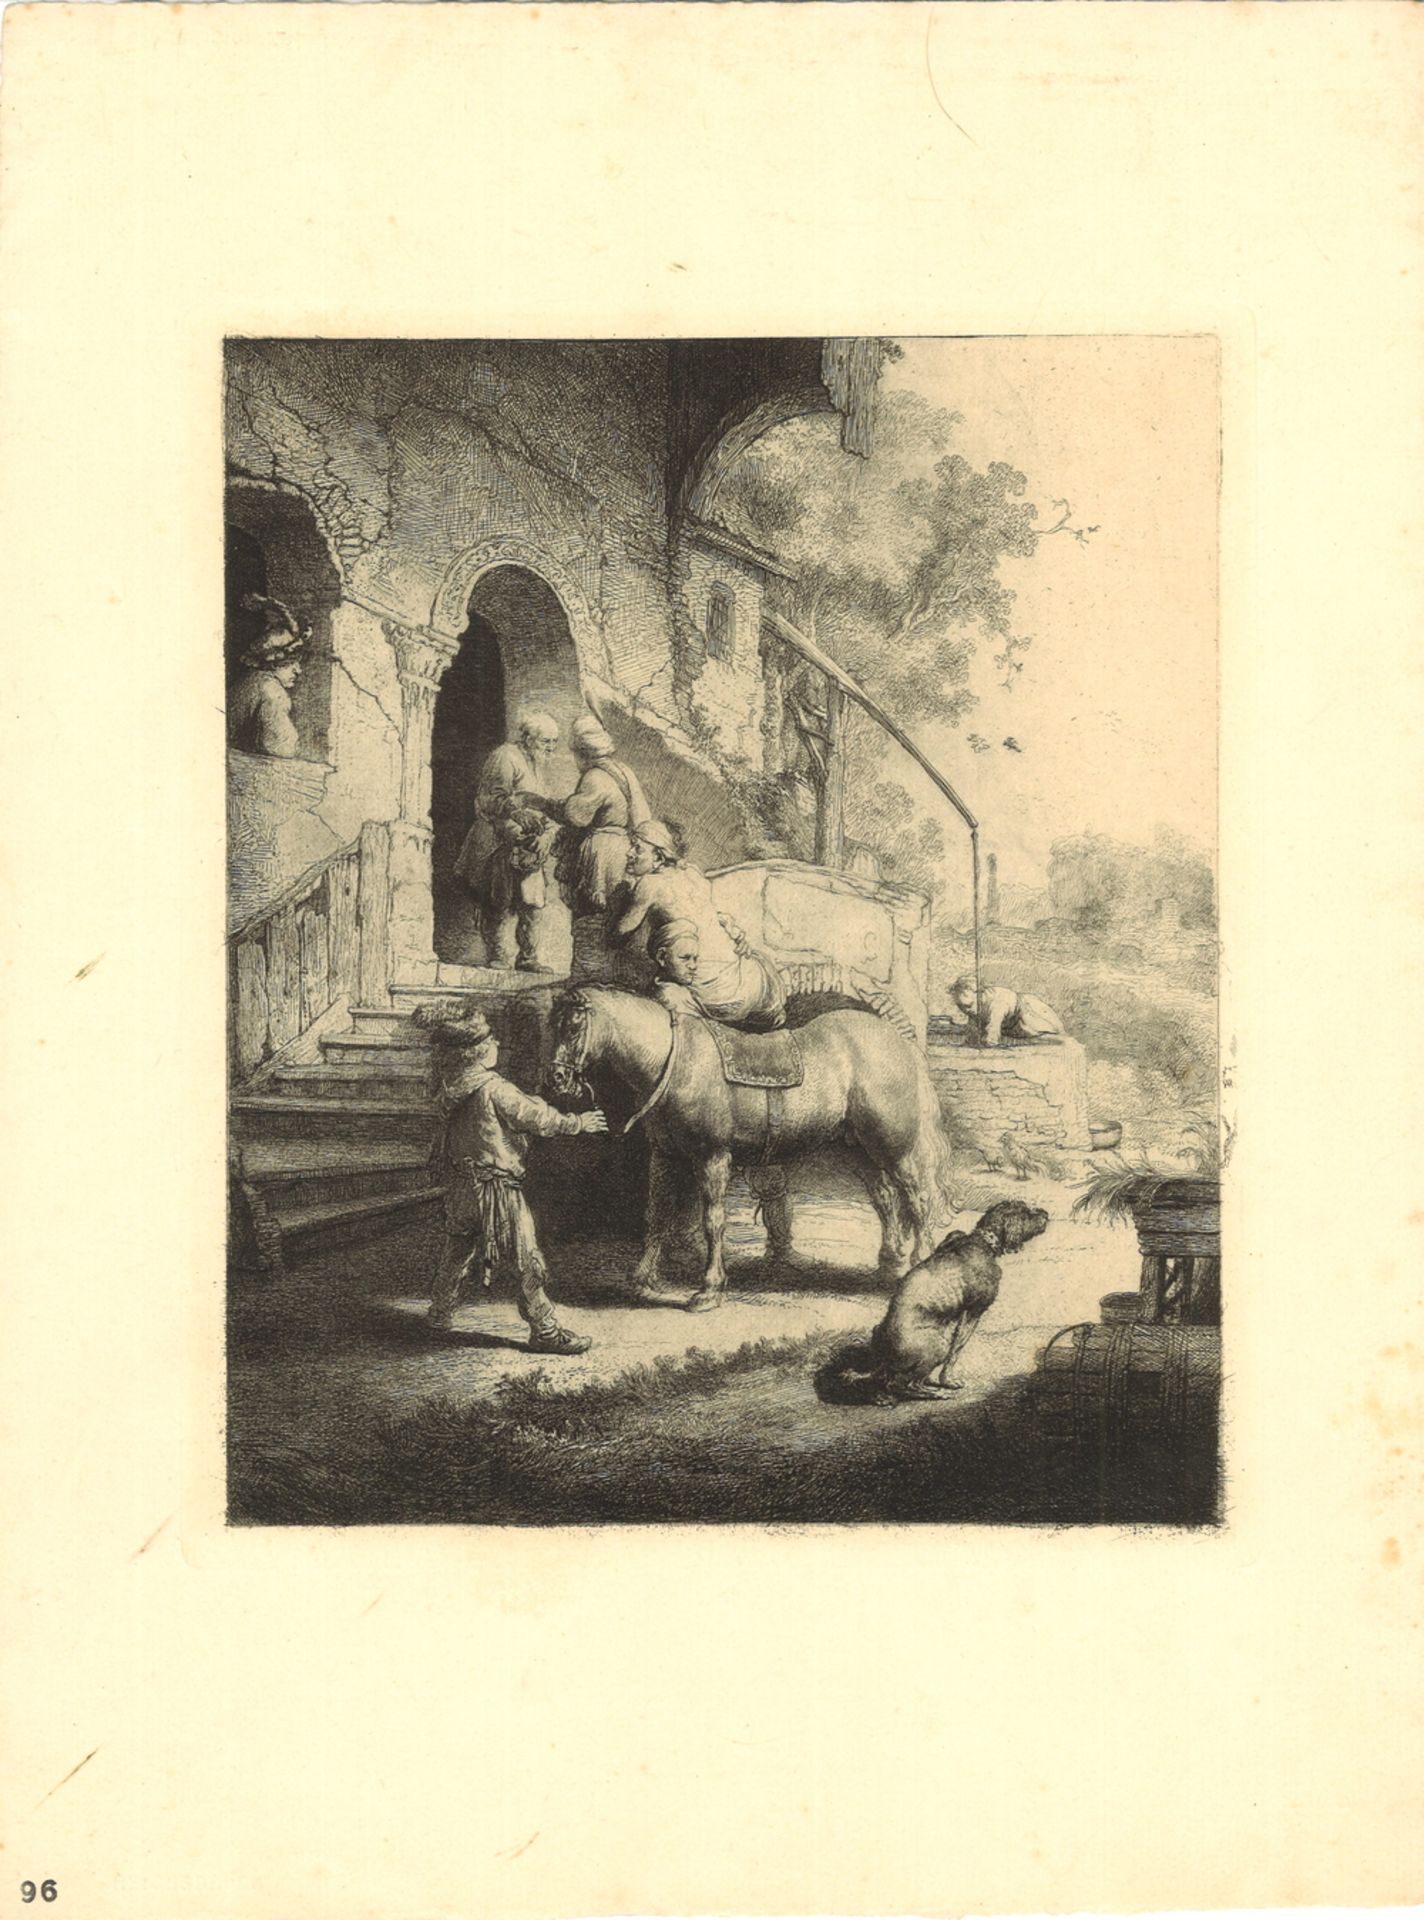 Druckgrafik "Der barmherzige Samariter", 1633, von Rembrandt Harmensz. van Rijn (1606-1669)